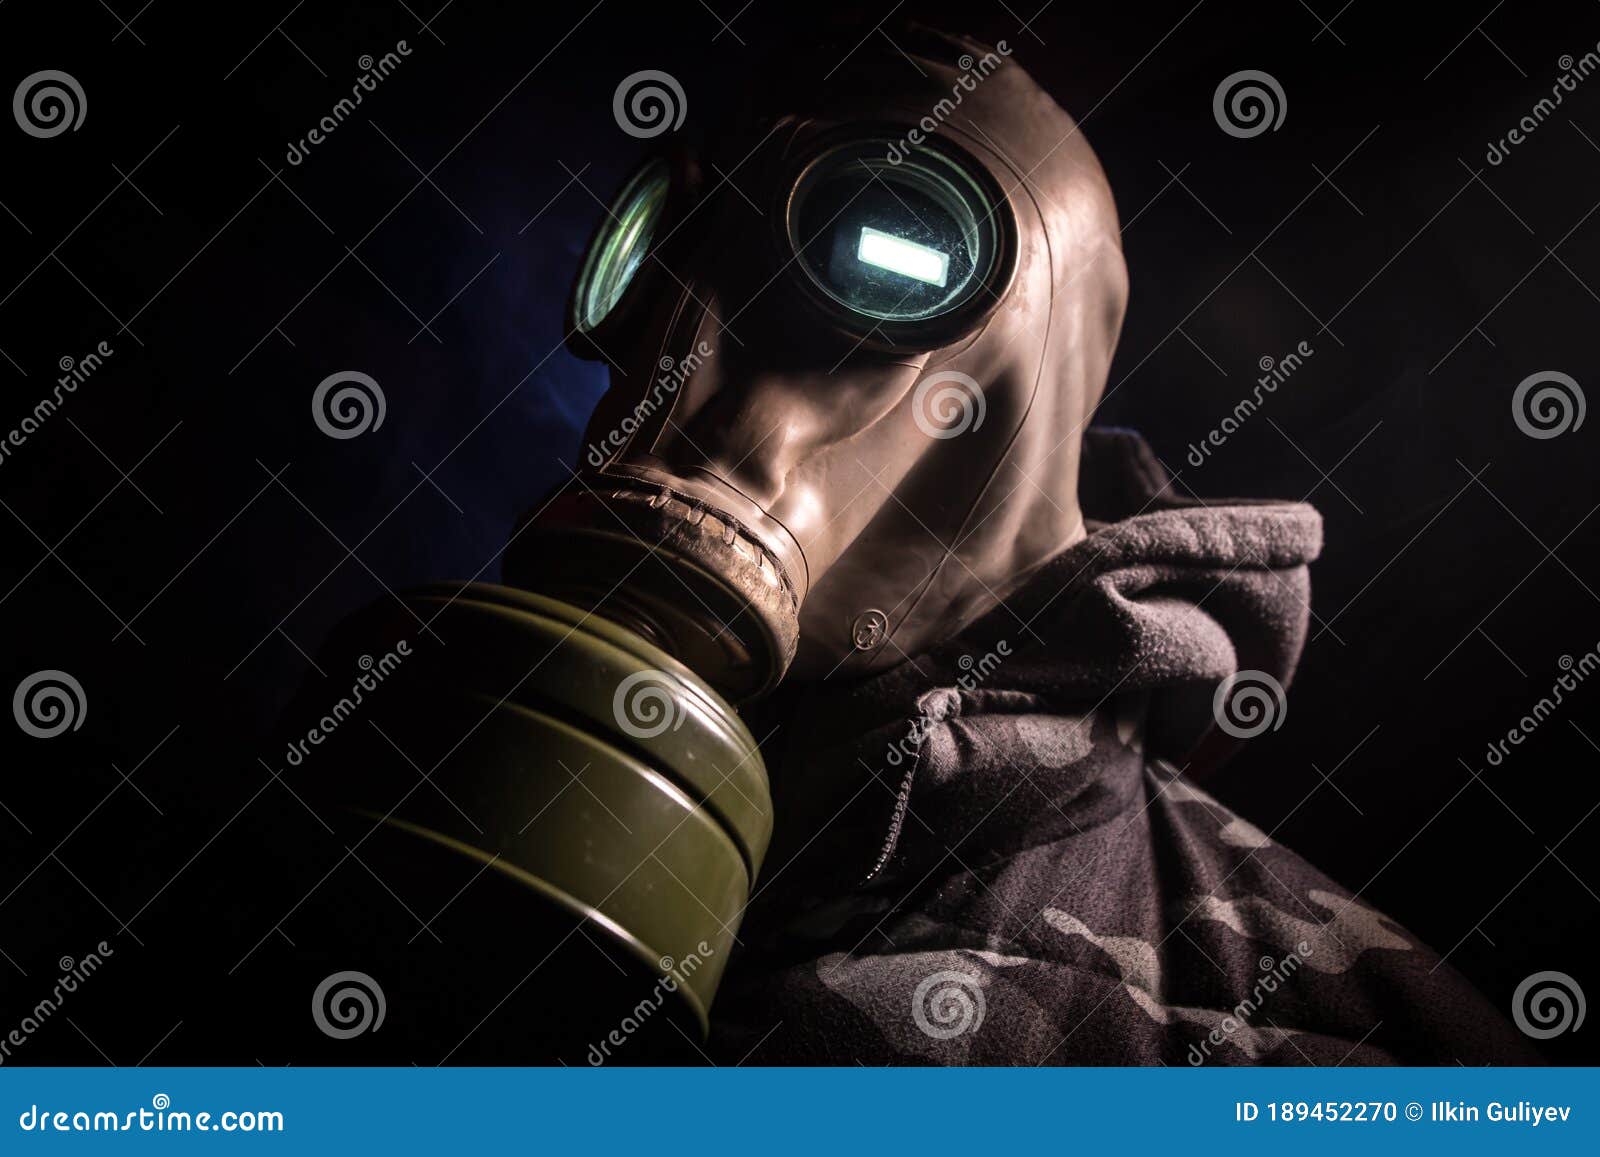 smoking gas mask tube